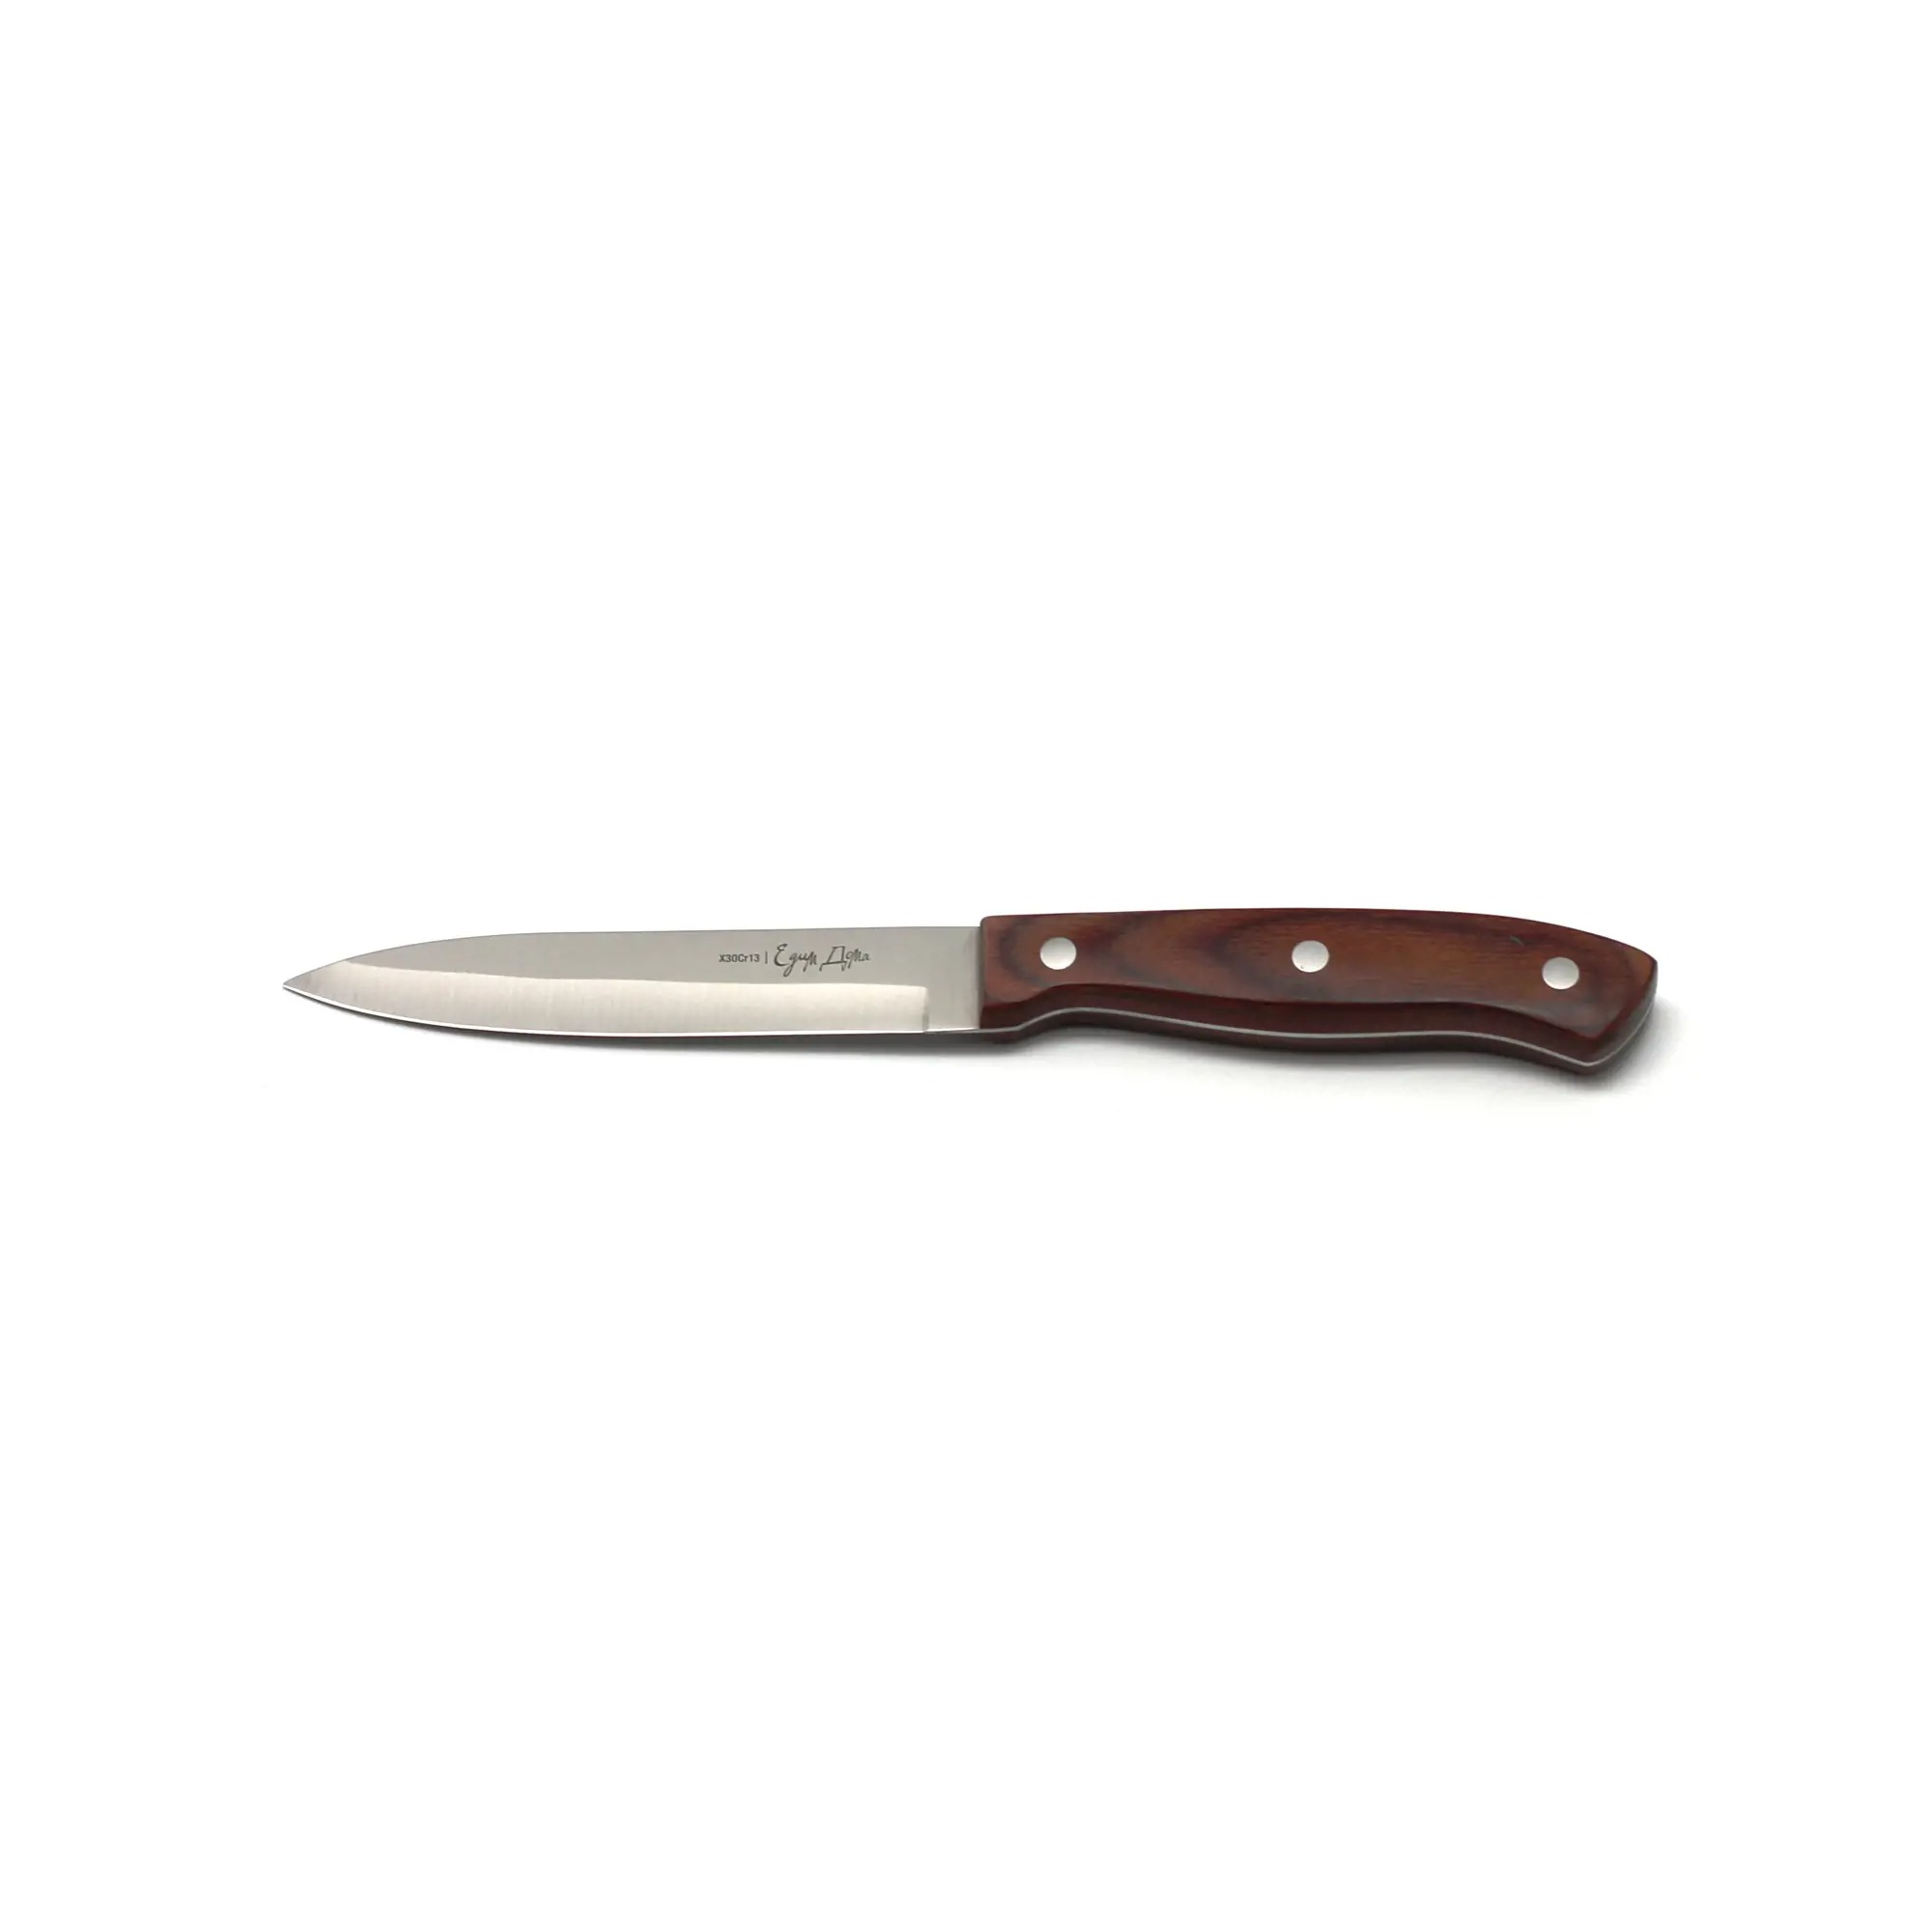 Нож универсальный Едим дома кухонный 12см листовой (ED-408) нож мясной едим дома разделочный 7см листовой ed 411